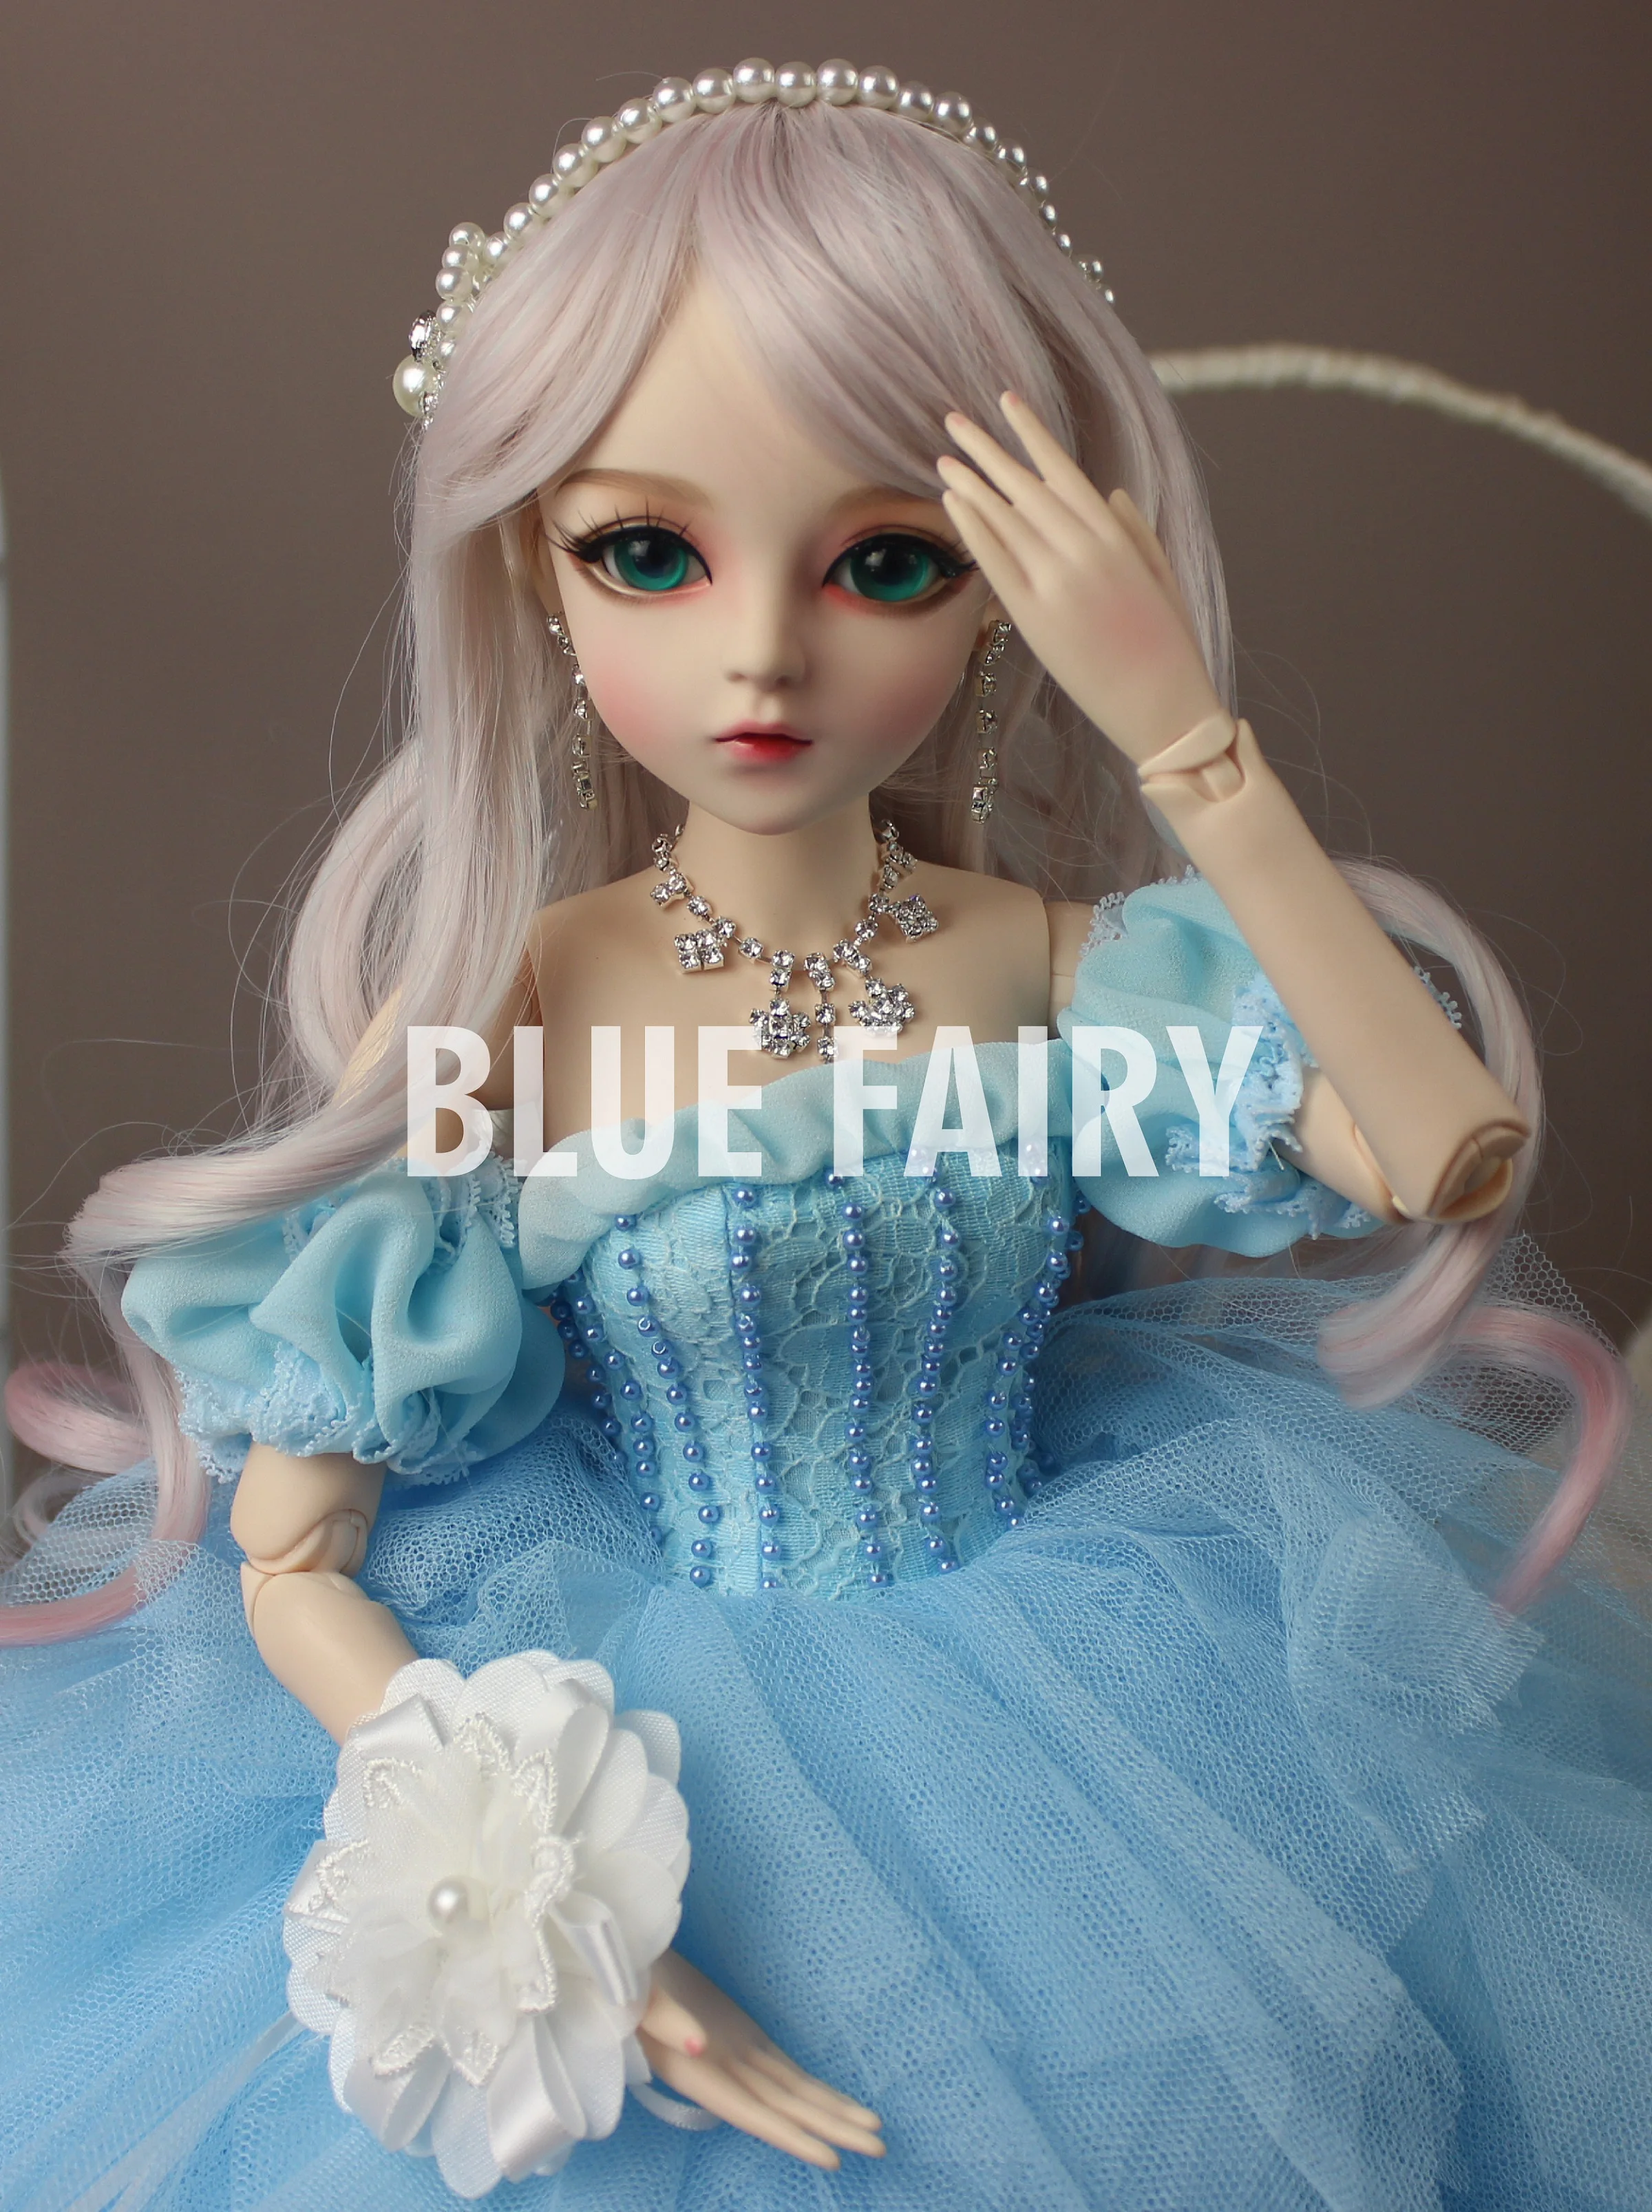 BJD 1/3 шарнирная кукла подарки для девочек ручная роспись макияж fullset сказочной принцессы Кукла с торжественное платье с феей голубого